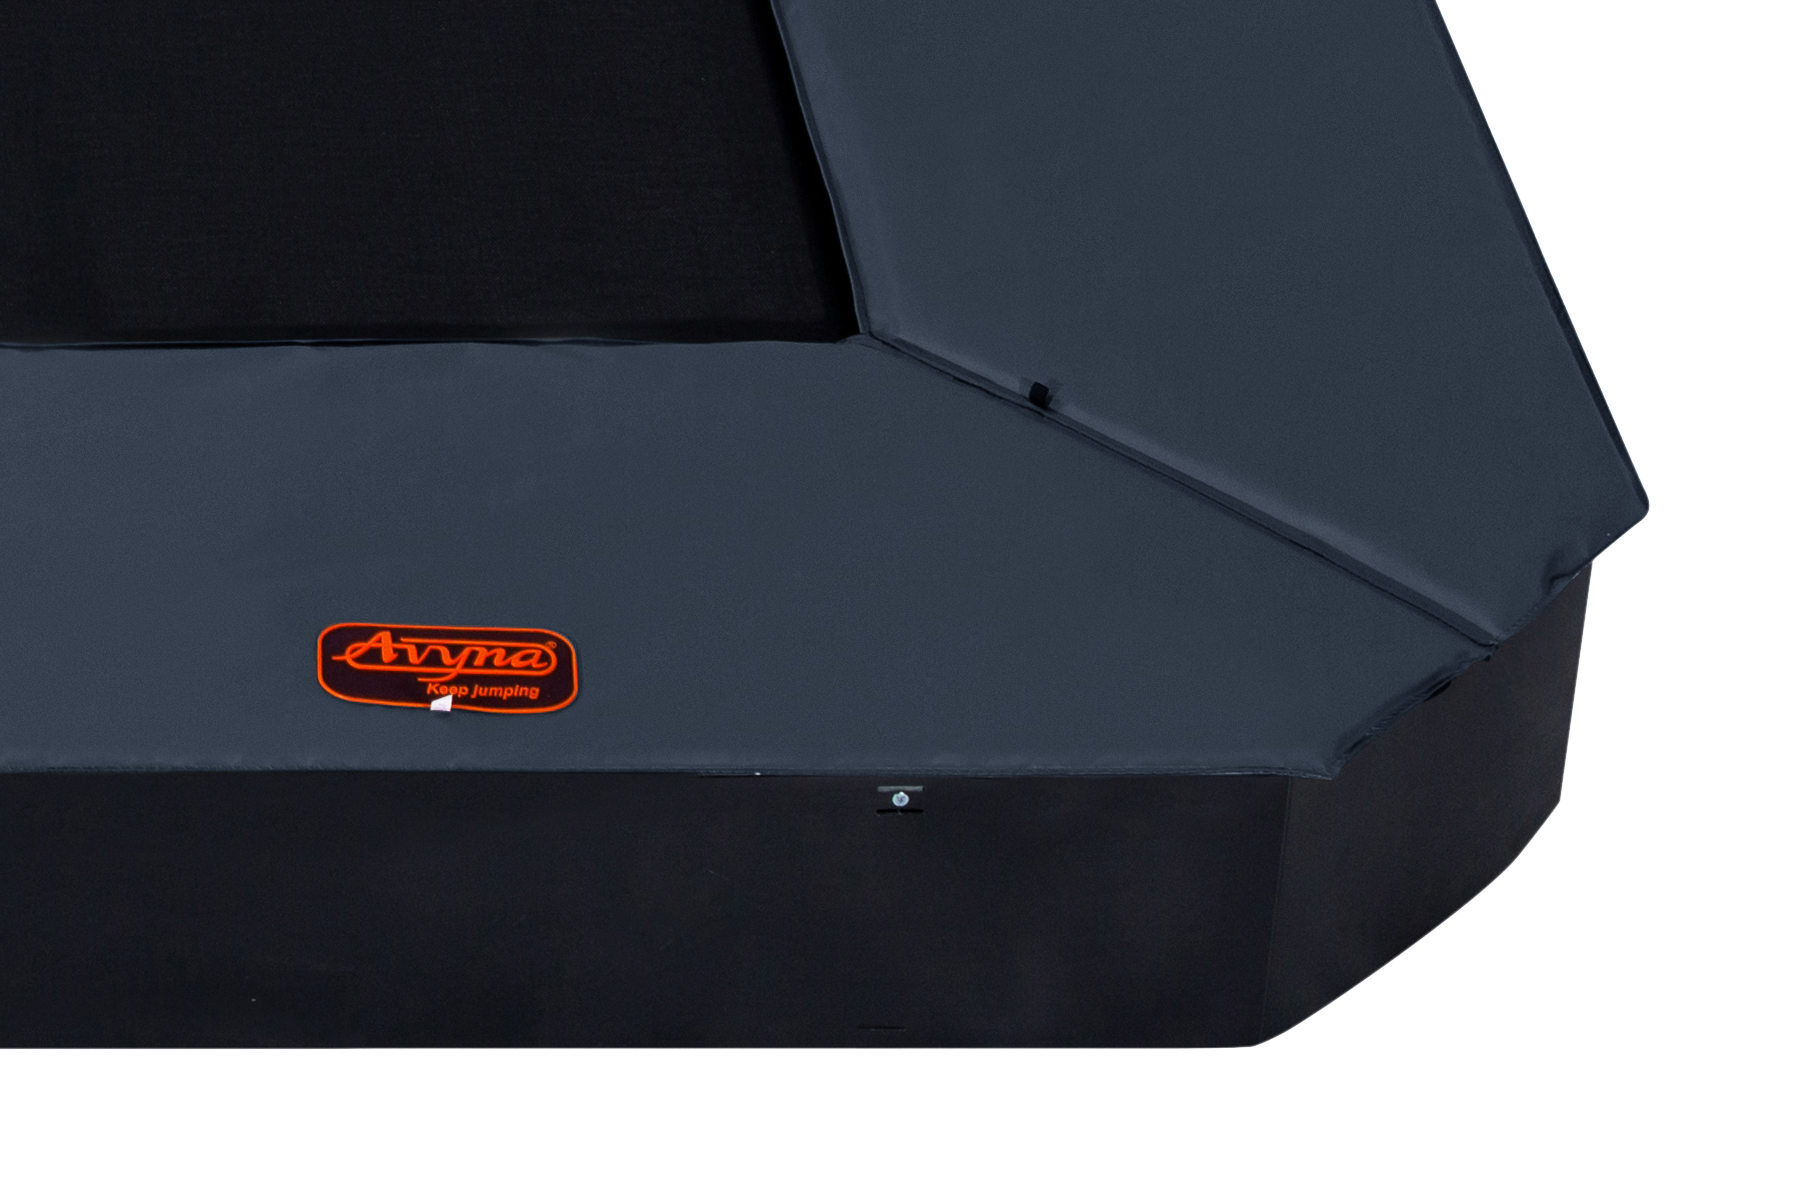 Avyna Pro-Line Top safe pad FlatLevel 234, 340x240 Grey